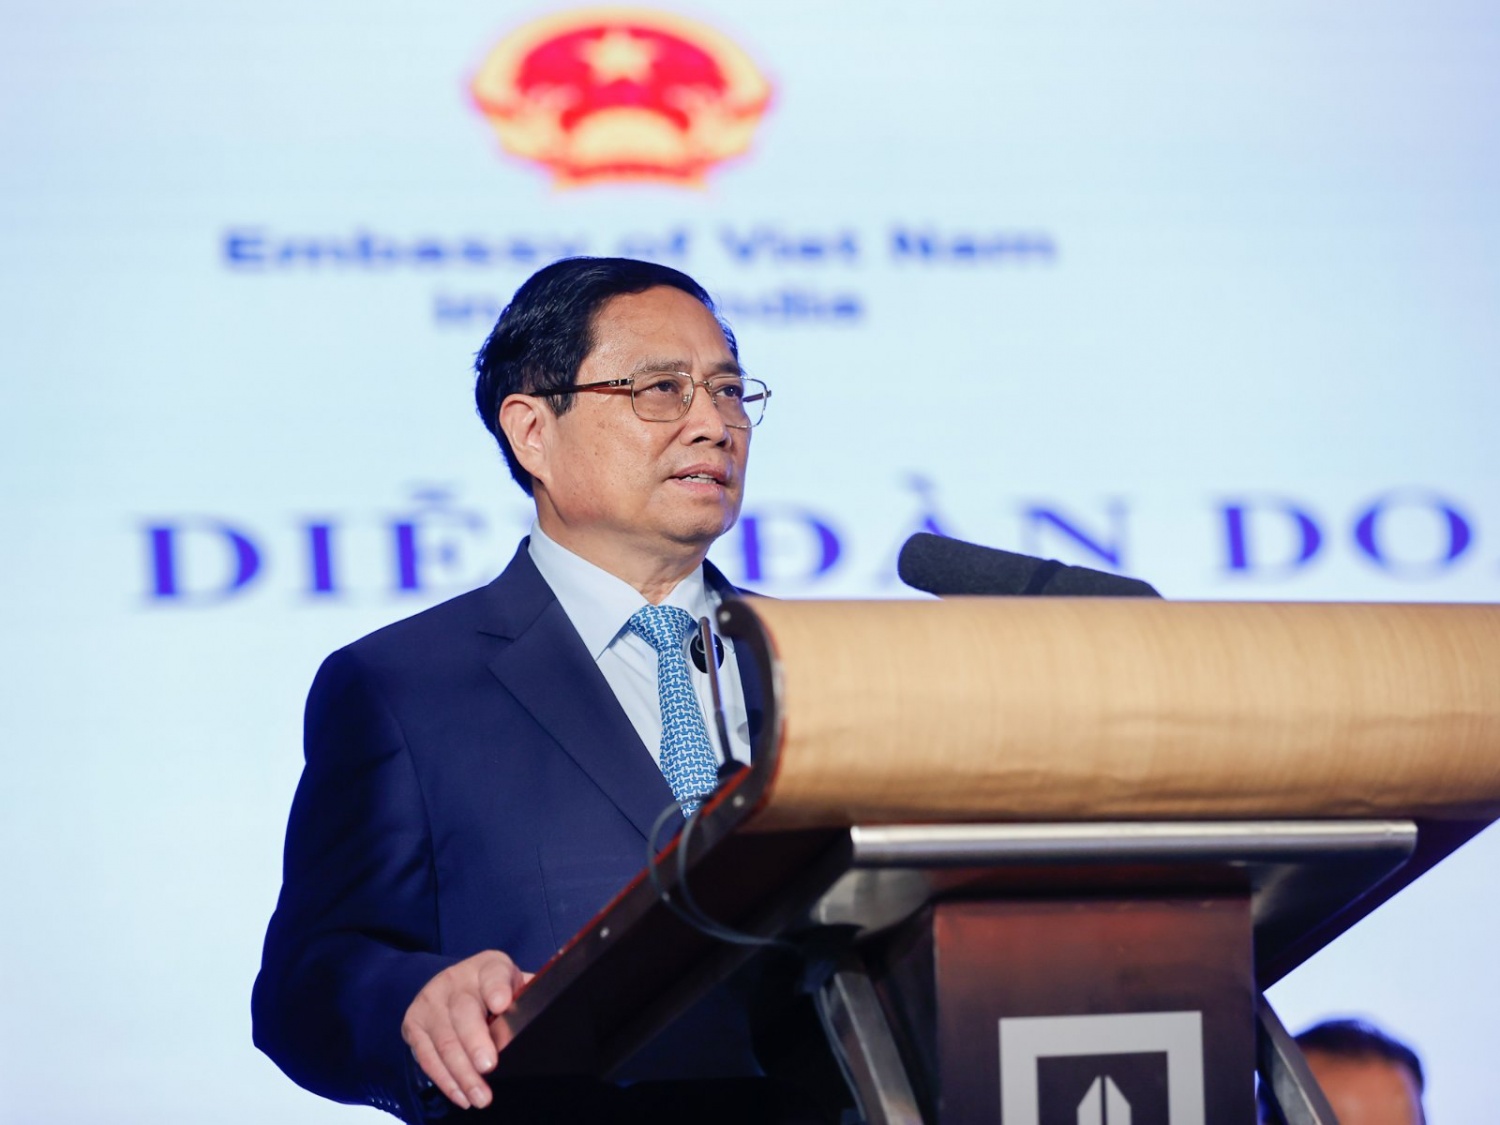 Thủ tướng Phạm Minh Chính: Việc đặt Việt Nam ở vị trí quan trọng, là “trọng tâm”, “cầu nối” trong chính sách “Hành động hướng Đông” đã góp phần thúc đẩy quan hệ Việt Nam - Ấn Độ nói chung và quan hệ kinh tế nói riêng phát triển lên tầm cao mới